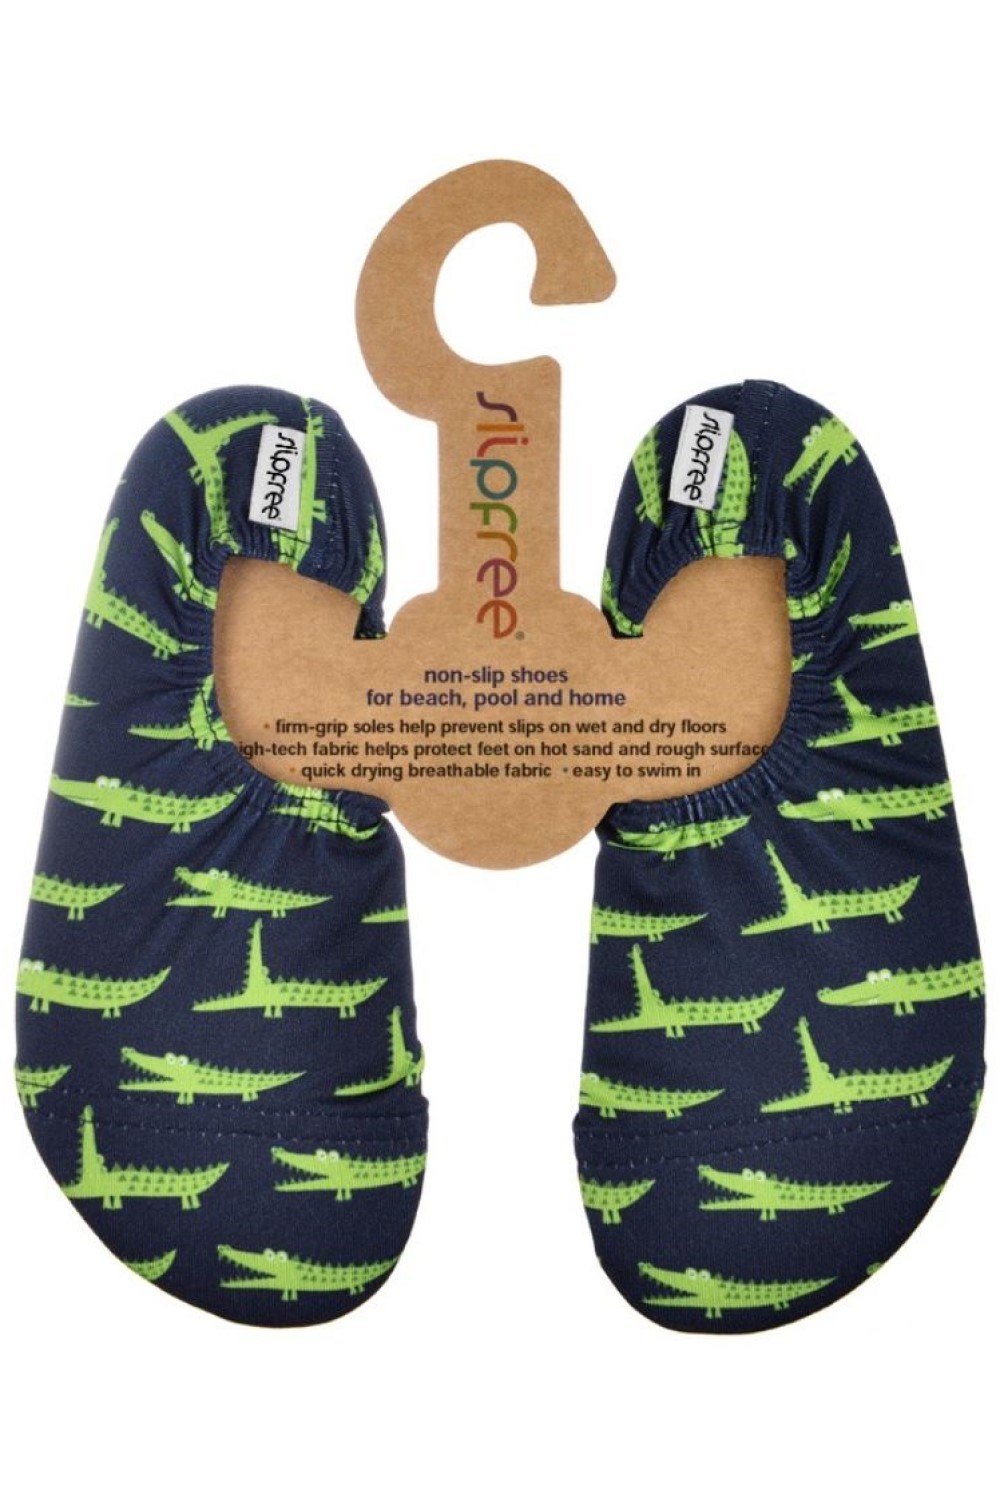 Gator Kids Non-Slip Swim Shoes -